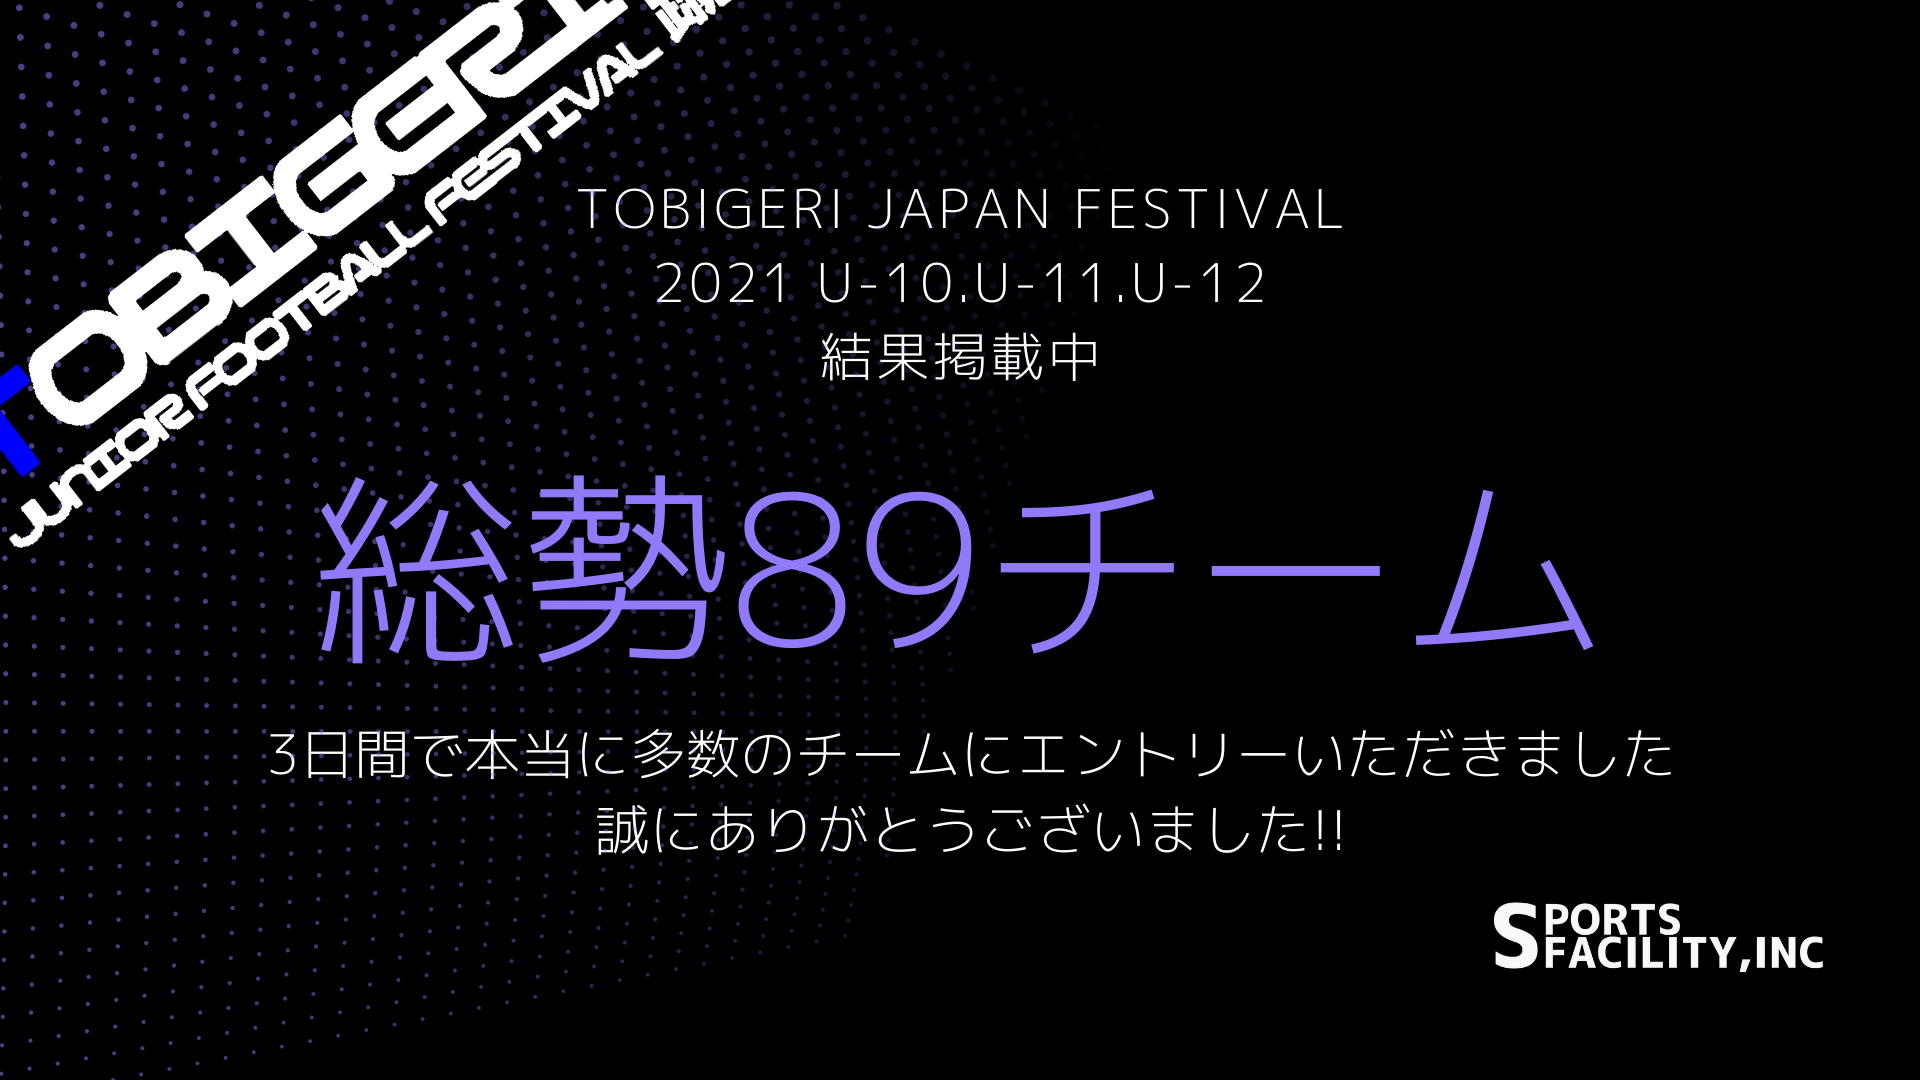 【TOBIGERI JAPAN FESTIVAL 2021】結果掲載中!!